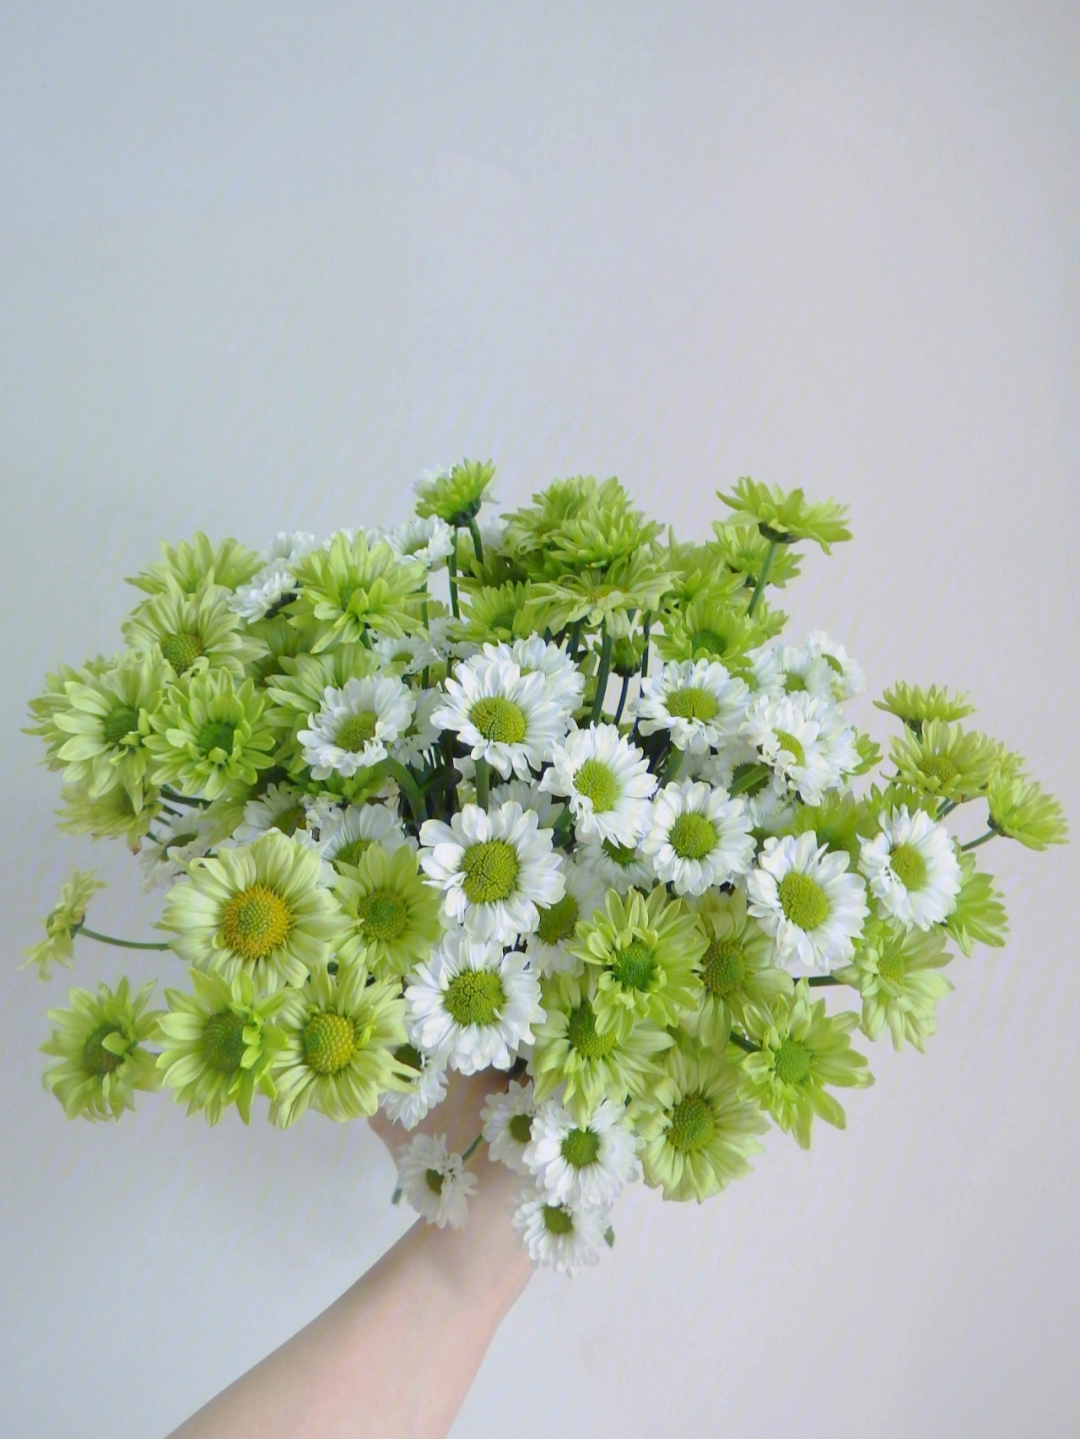 花心为绿色的白色雏菊图片